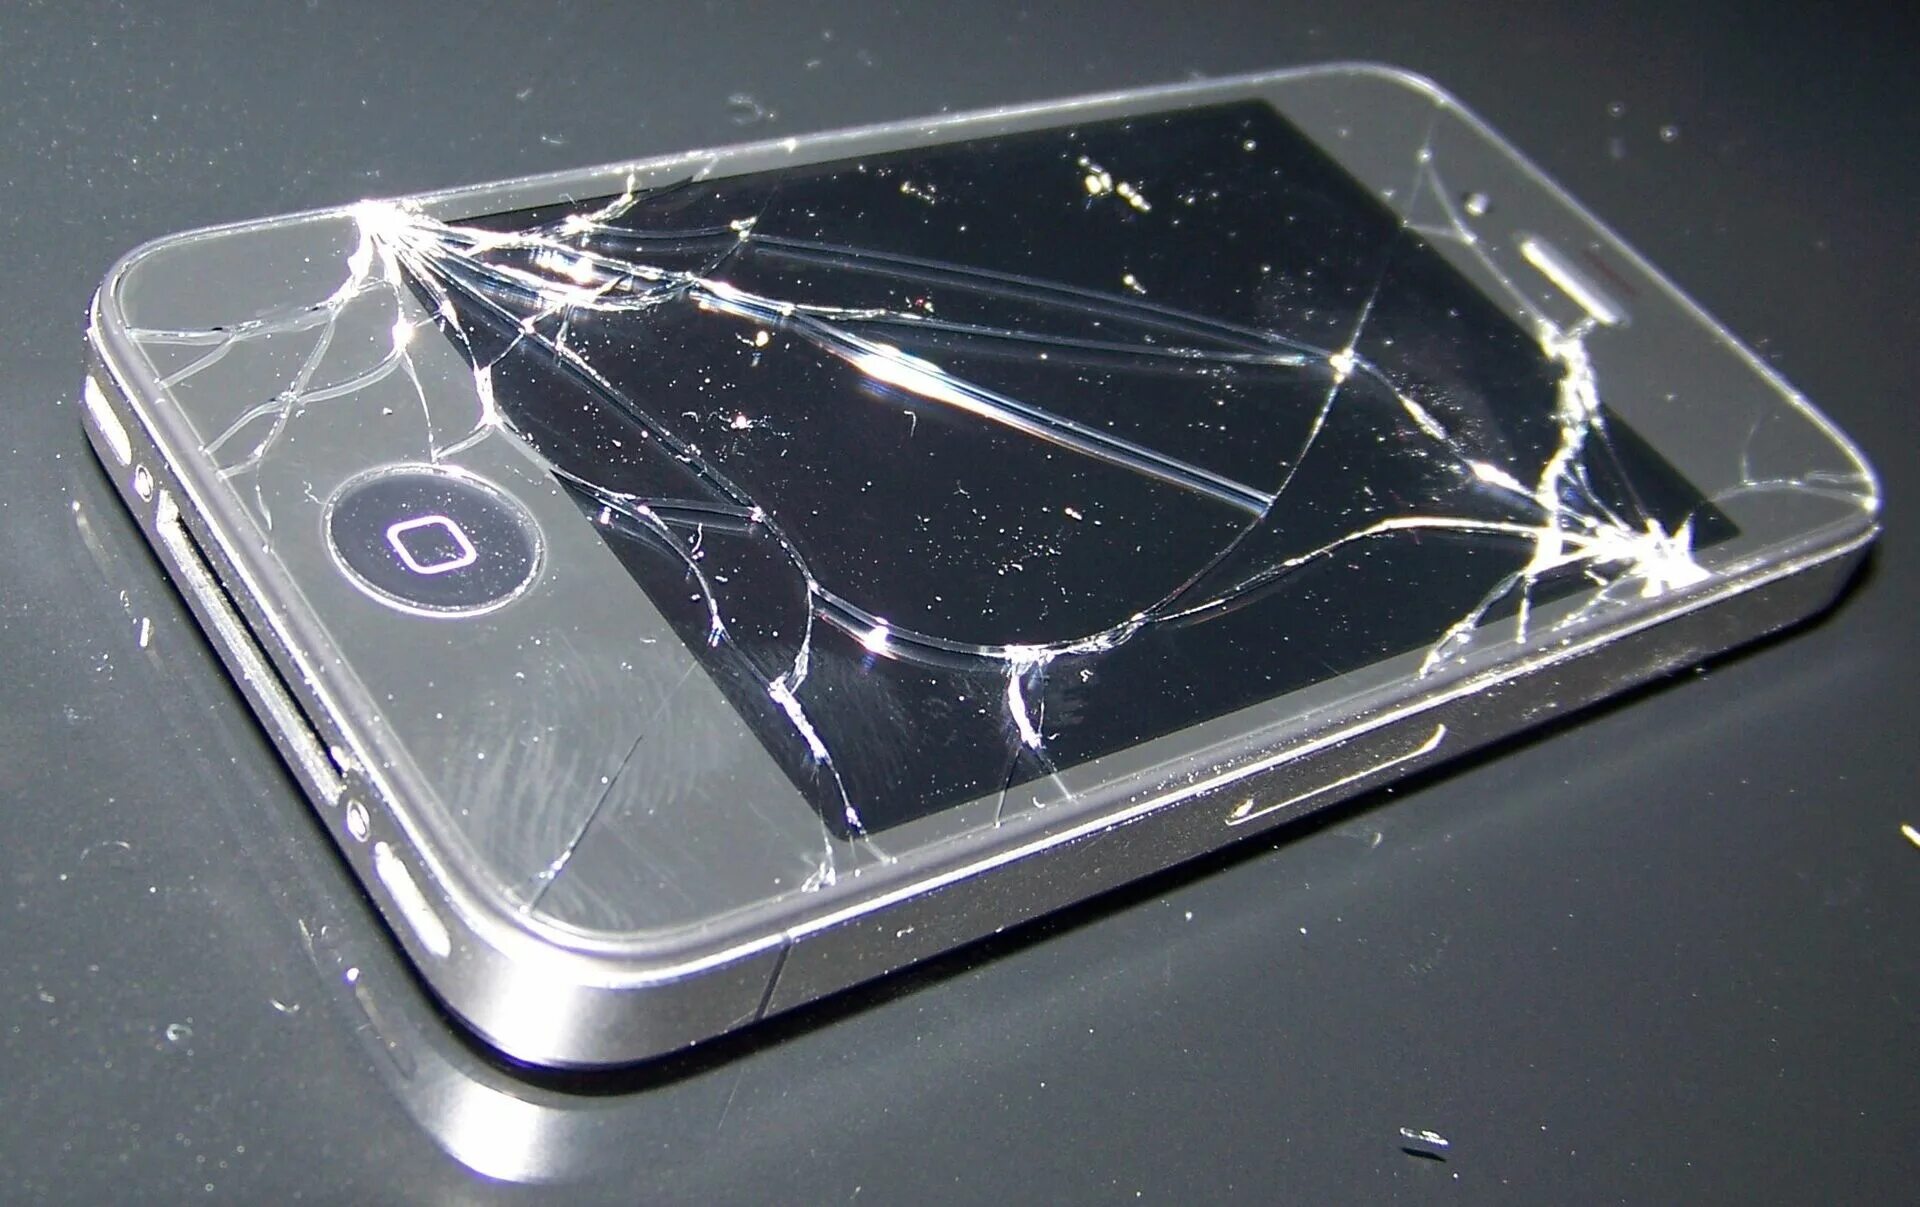 Купить разбитый телефон. Разбитый айфон. Разбитые айфоны. Сломанный айфон. Сломанный сотовый телефон.